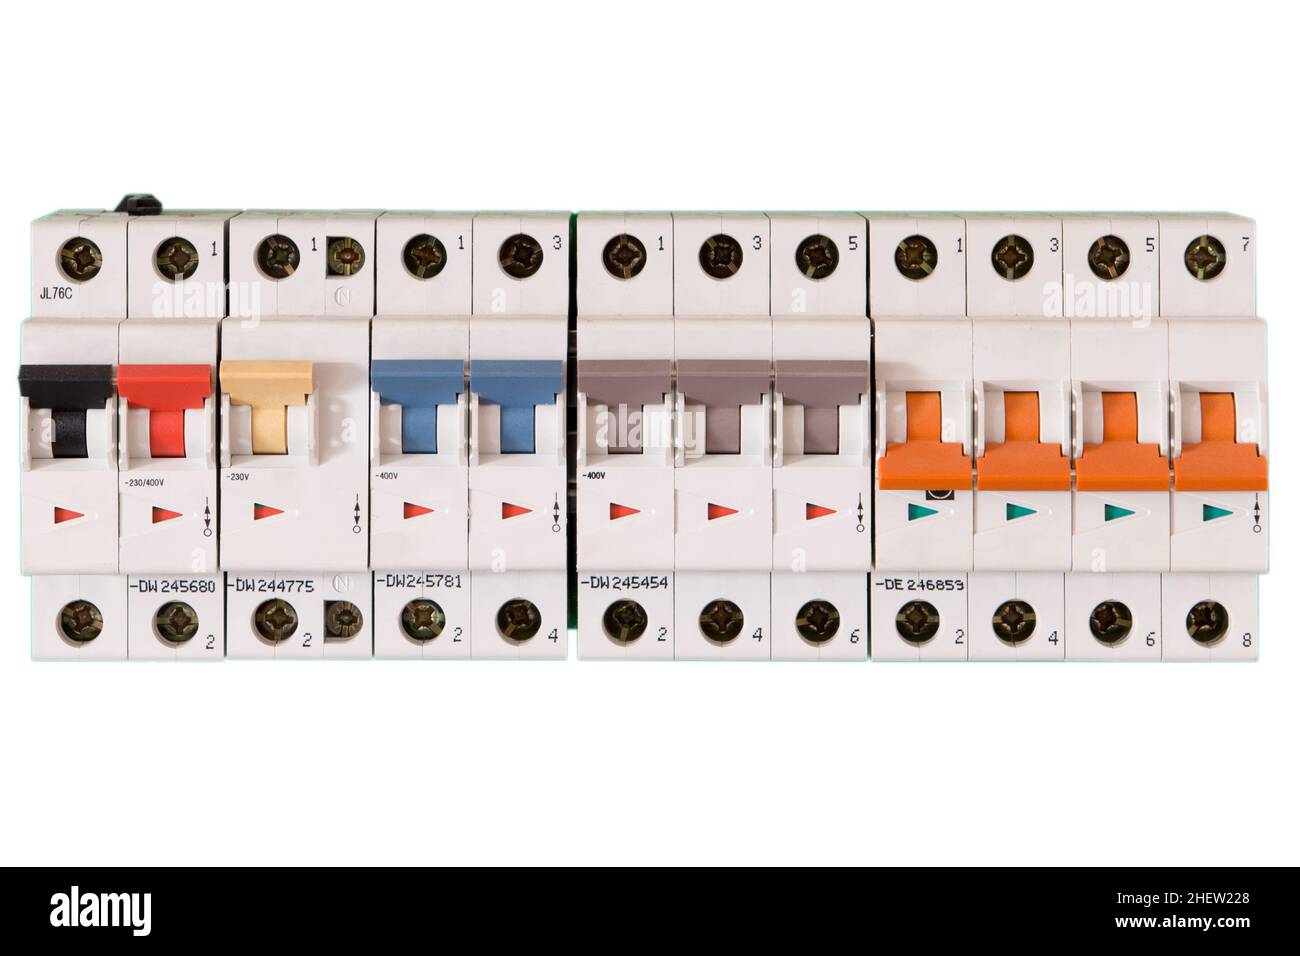 interrupteurs électriques colorés en mode marche et arrêt Banque D'Images